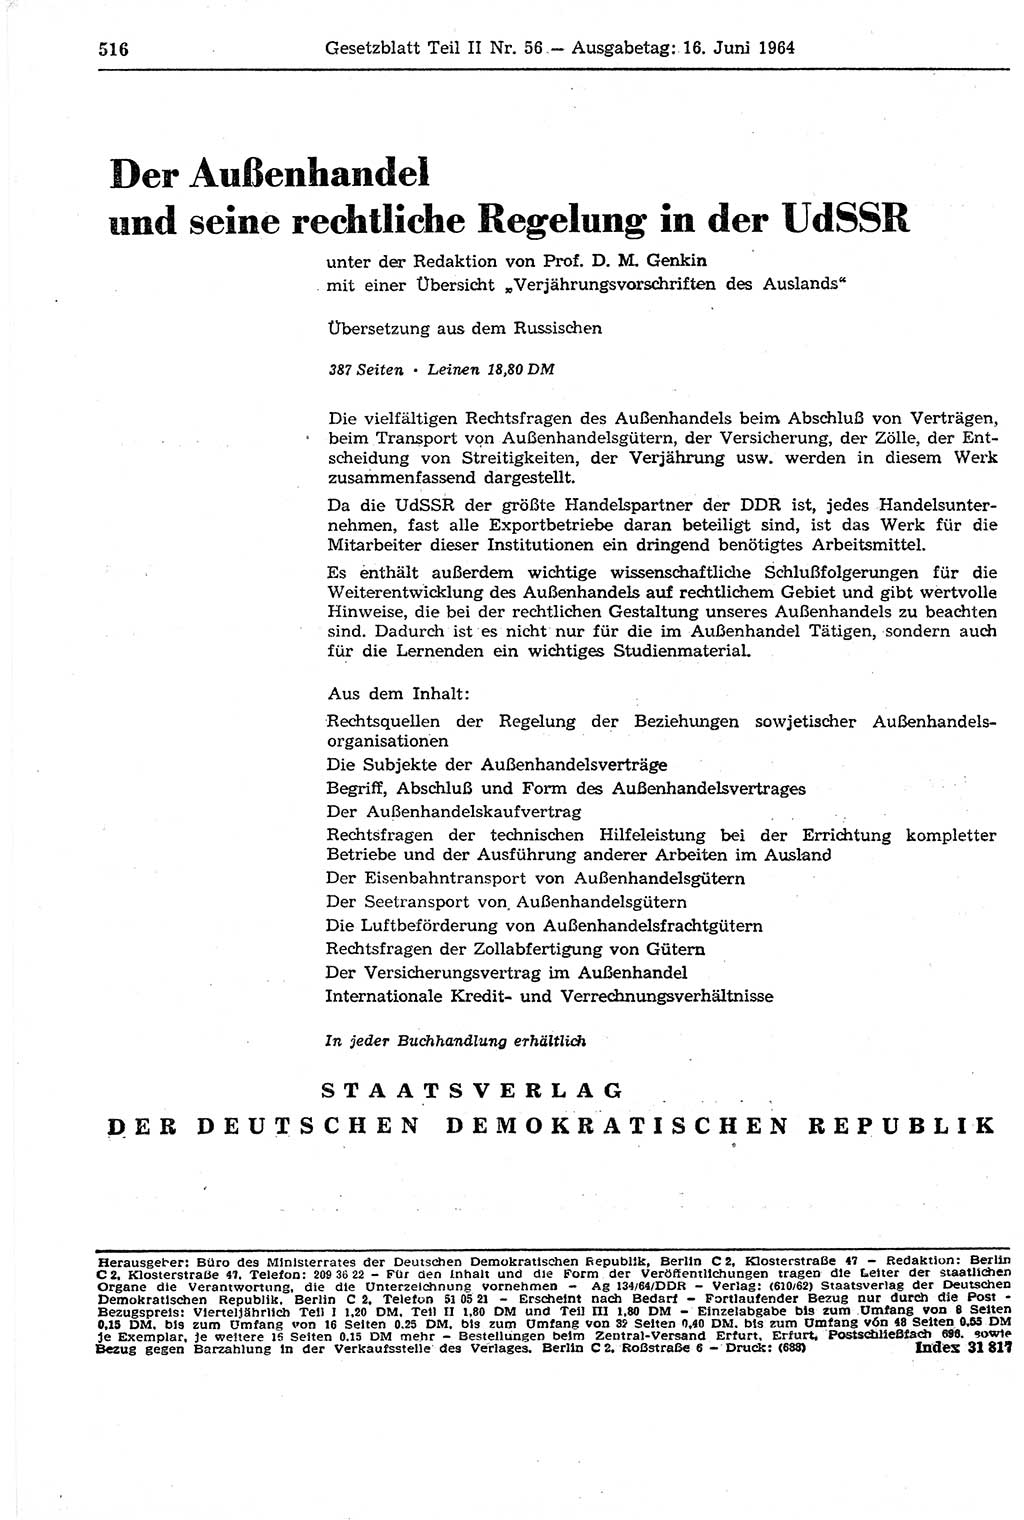 Gesetzblatt (GBl.) der Deutschen Demokratischen Republik (DDR) Teil ⅠⅠ 1964, Seite 516 (GBl. DDR ⅠⅠ 1964, S. 516)